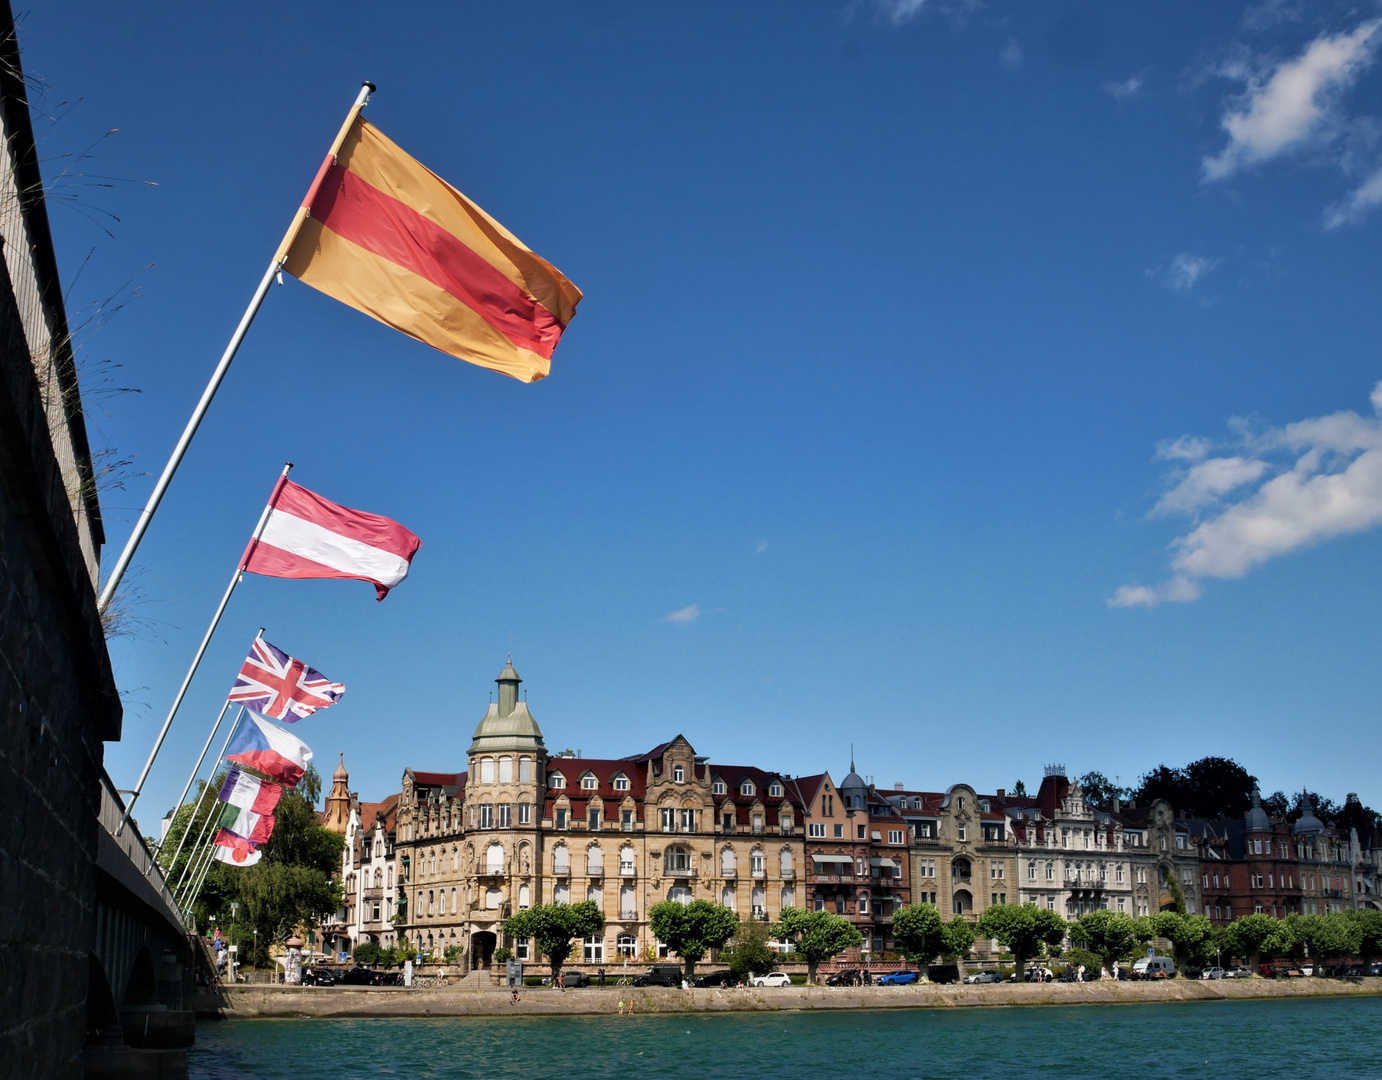 Urlaub in Konstanz 2020 - Rheinbrücke nach Petershausen